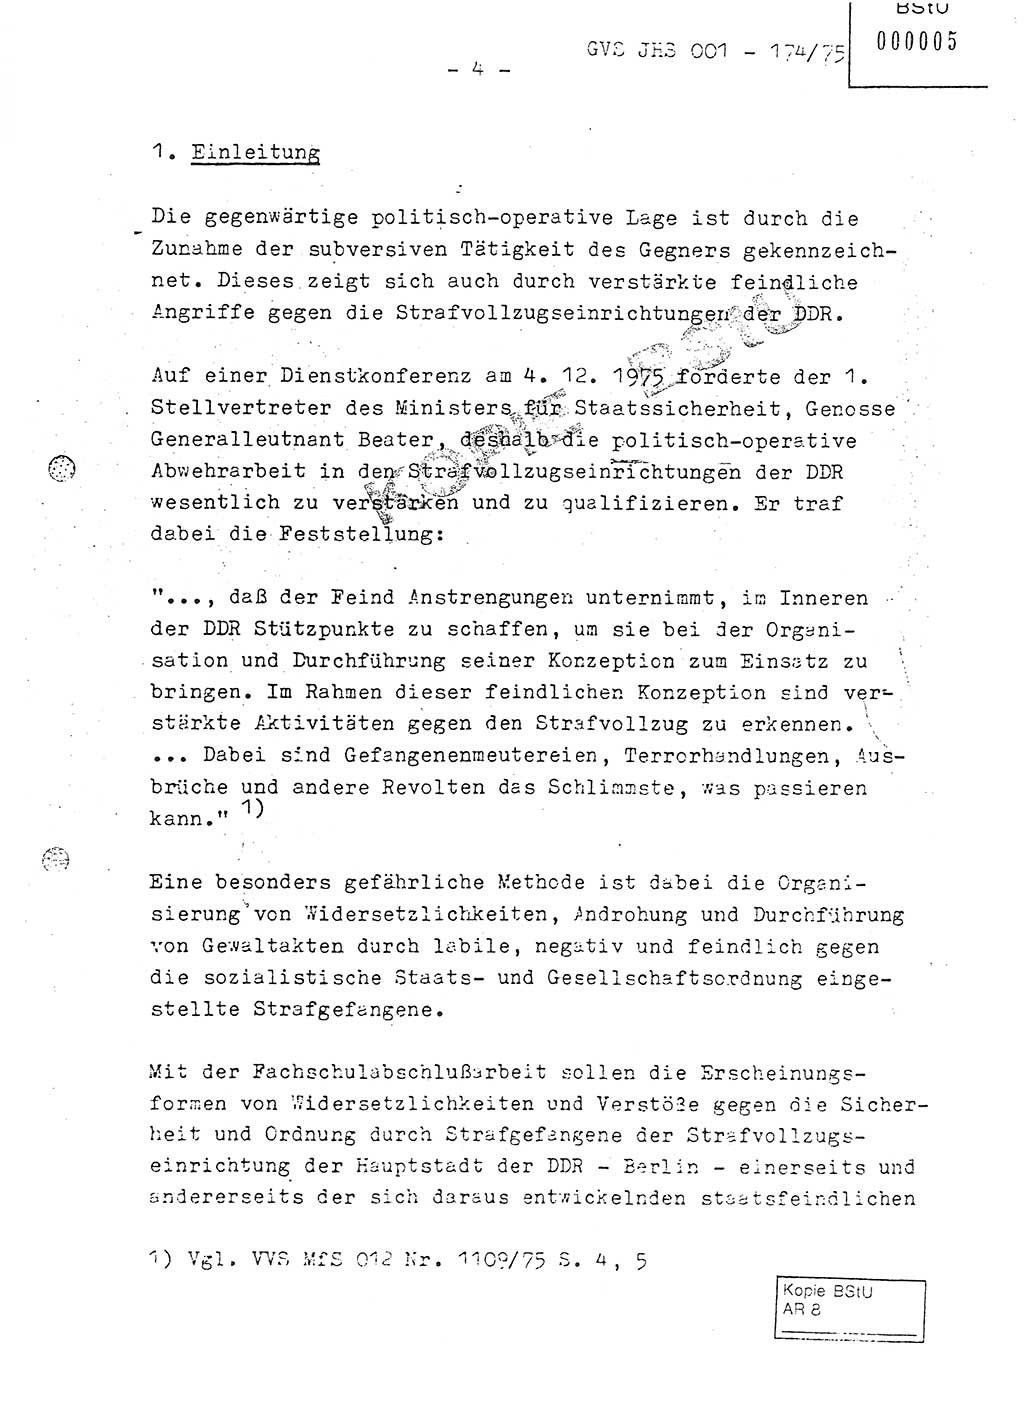 Fachschulabschlußarbeit Oberleutnant Adolf Cichon (Abt. Ⅶ), Ministerium für Staatssicherheit (MfS) [Deutsche Demokratische Republik (DDR)], Juristische Hochschule (JHS), Geheime Verschlußsache (GVS) 001-174/75, Potsdam 1976, Seite 4 (FS-Abschl.-Arb. MfS DDR JHS GVS 001-174/75 1976, S. 4)